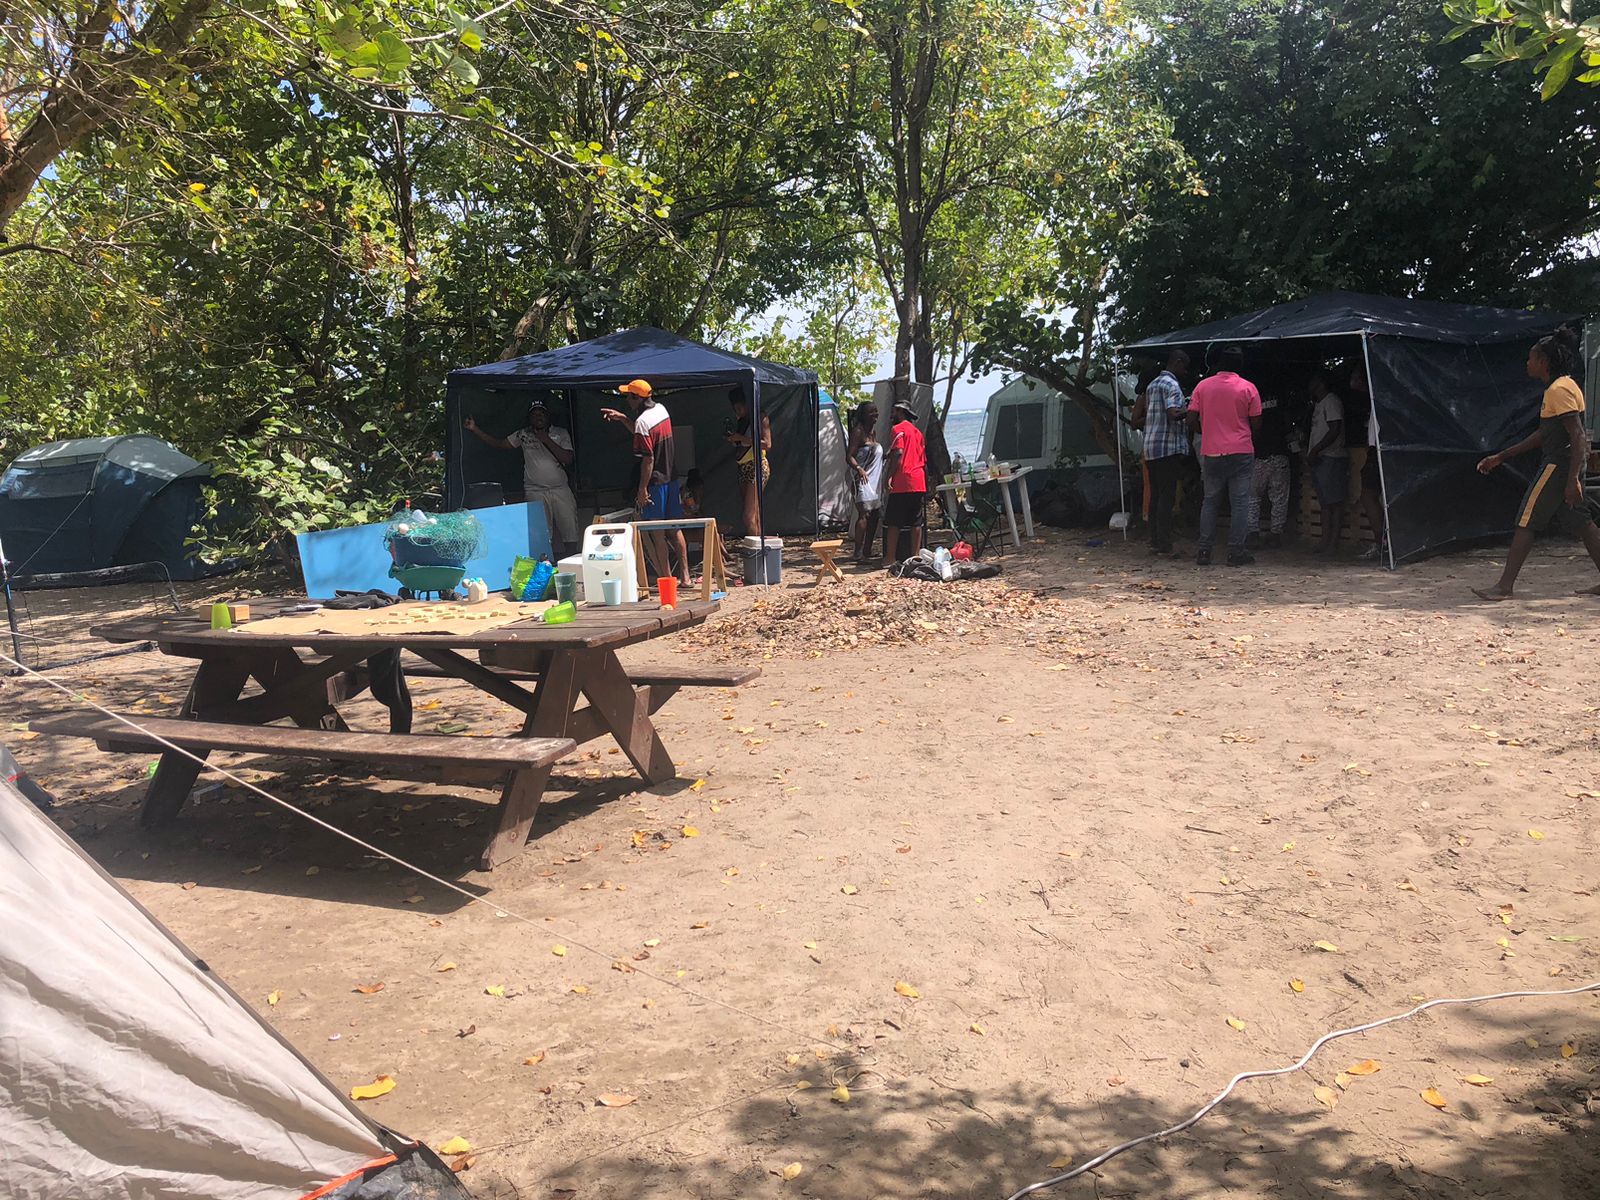     En Martinique, le camping a toujours la cote à Pâques 

